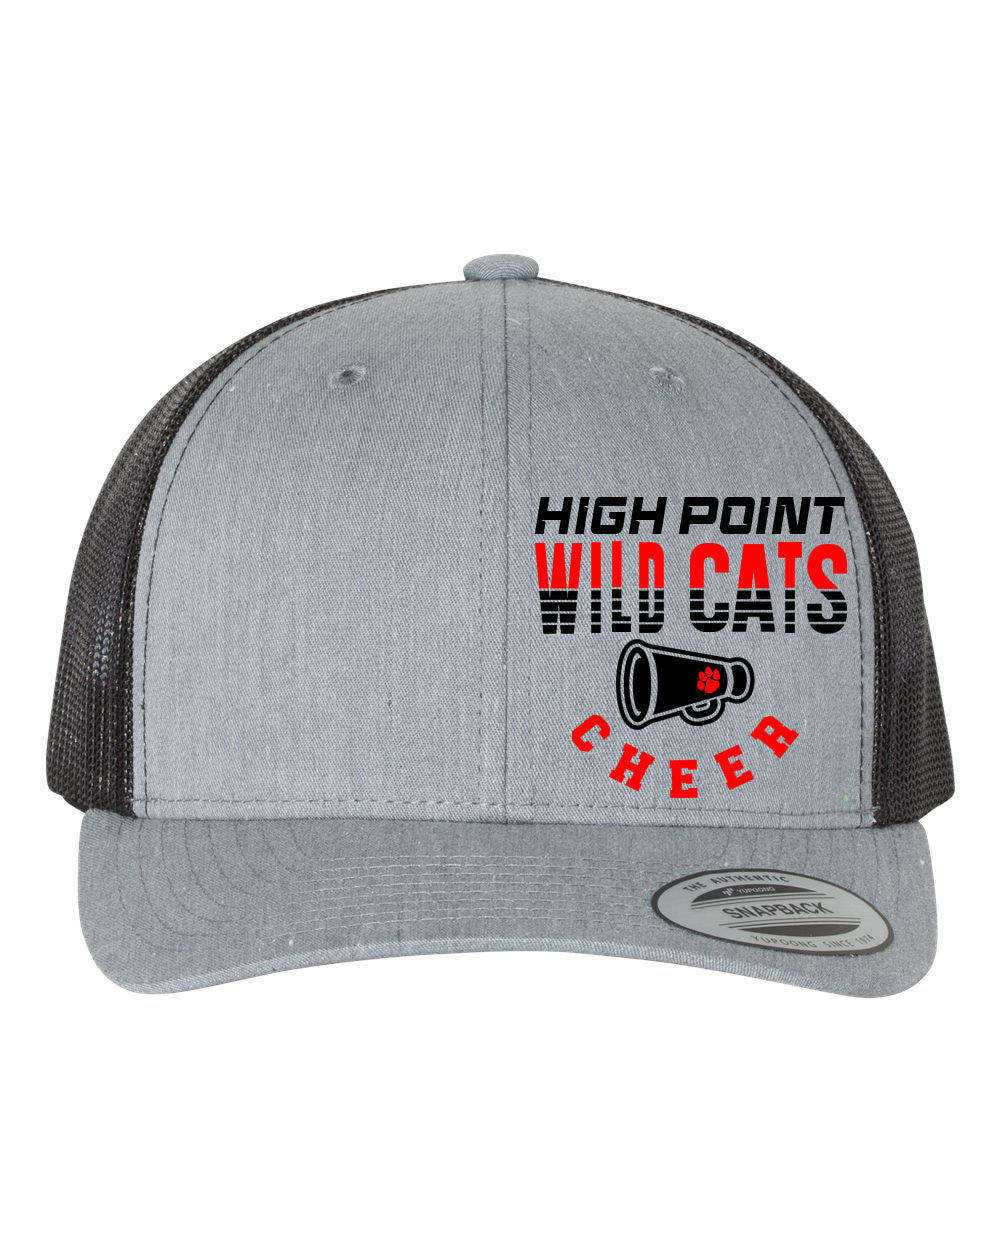 Wildcats Cheer design 2 Trucker Hat